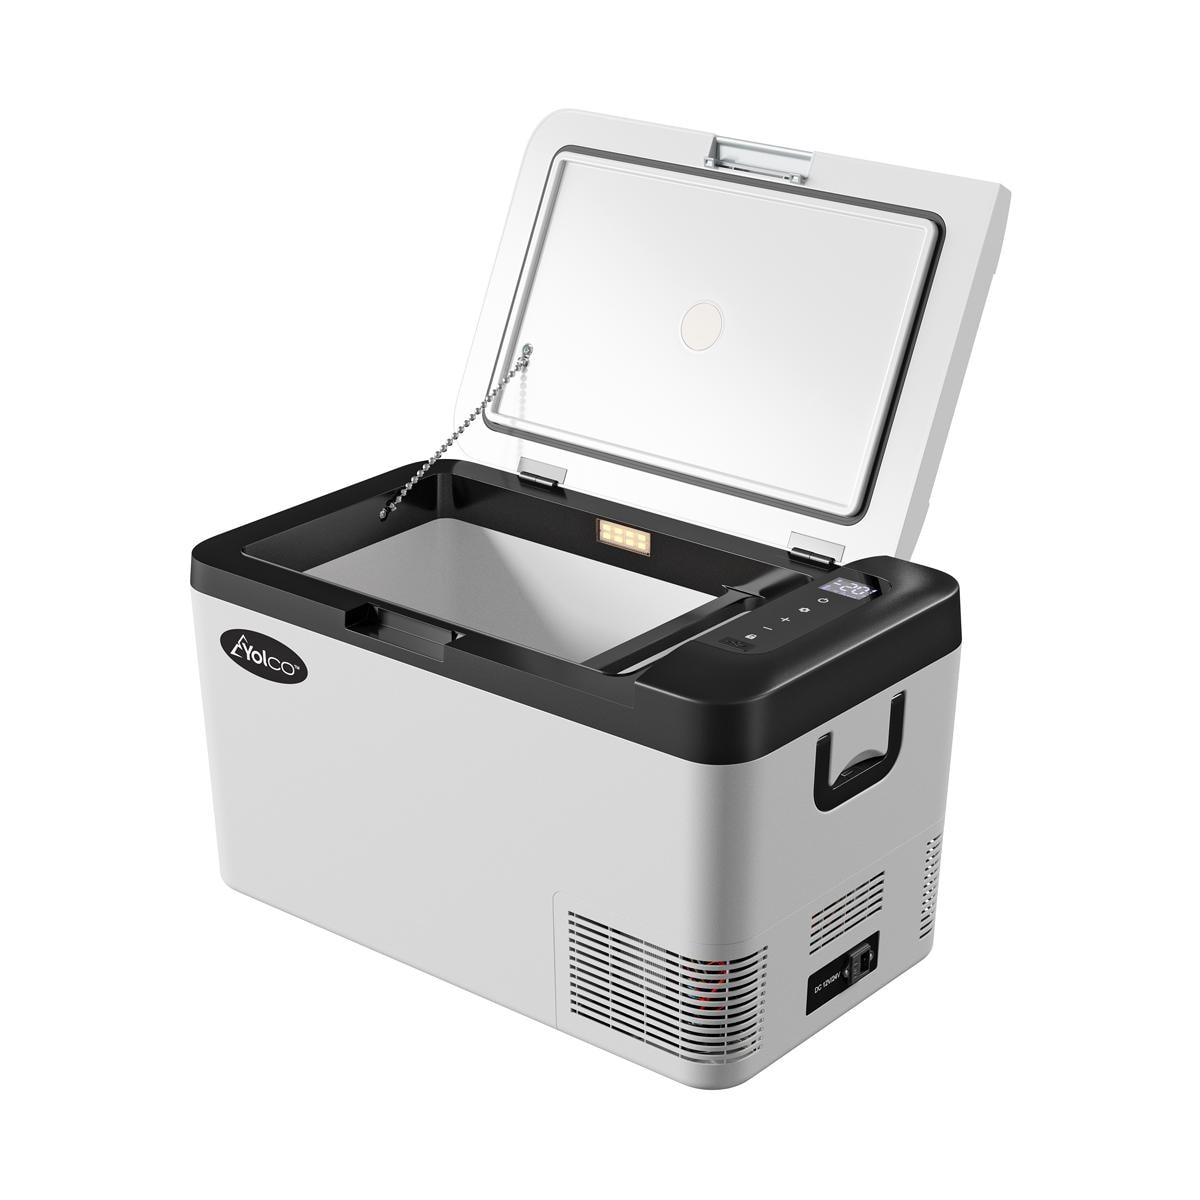 YWBL-WH Kühlbox aus Aluminium 54 x 204 x 120 mm für Elektronikprojekte,  Elektronische Bauteile